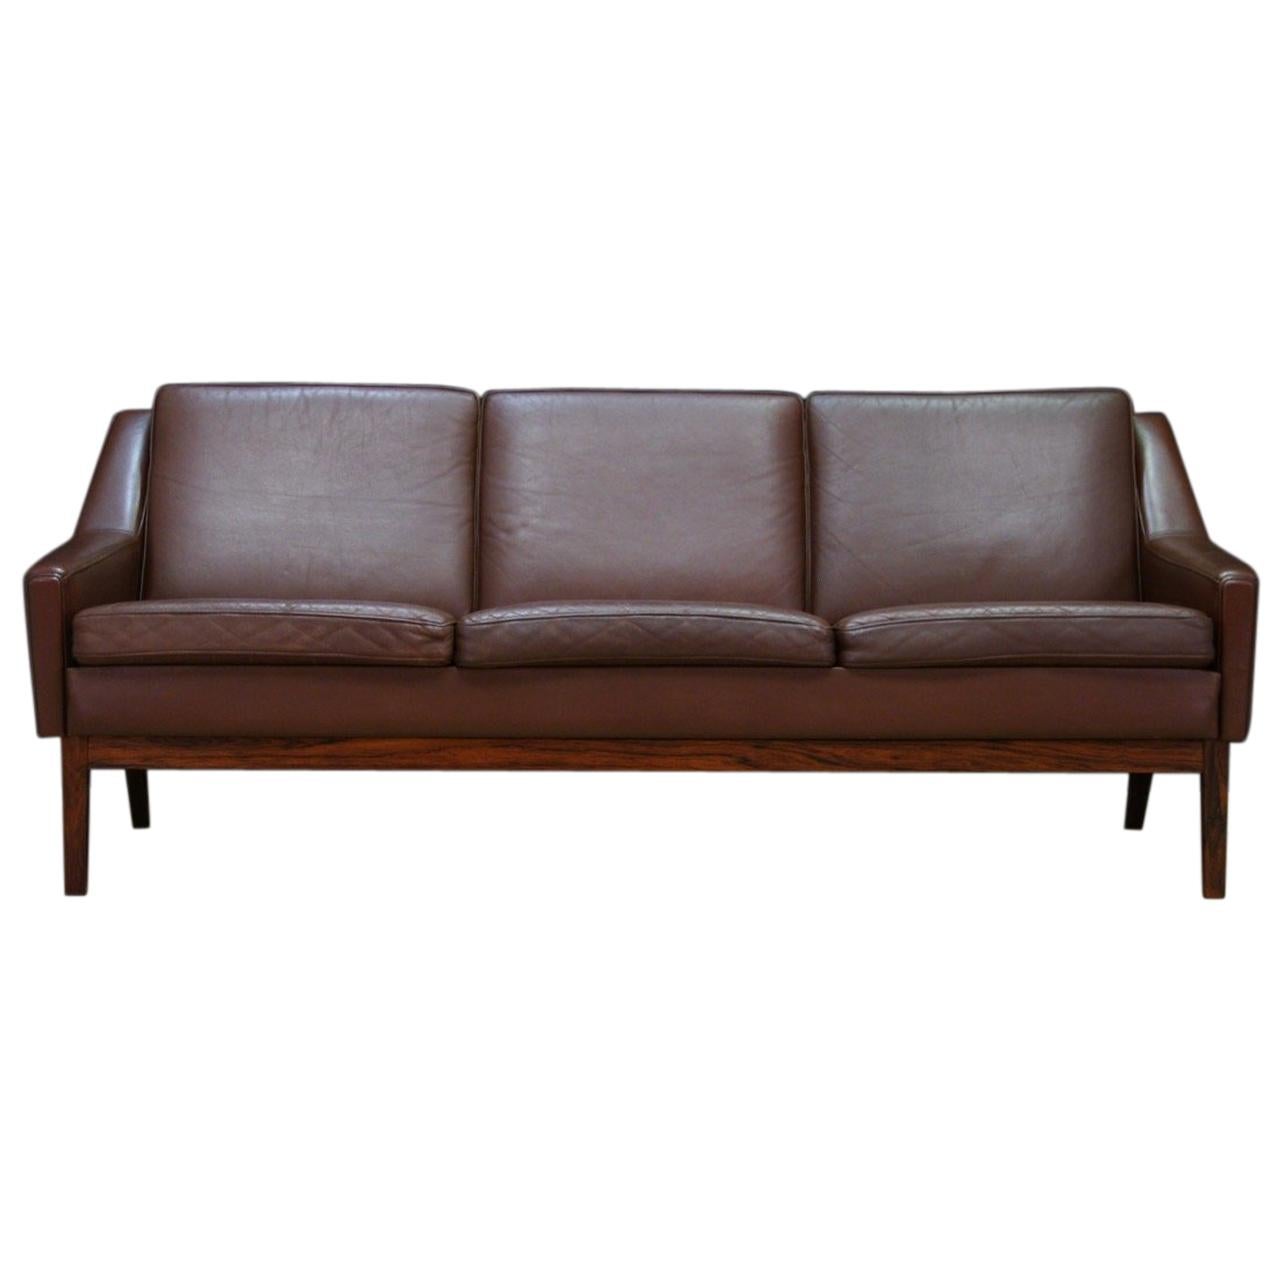 Danish Design Vintage Sofa Retro Leather